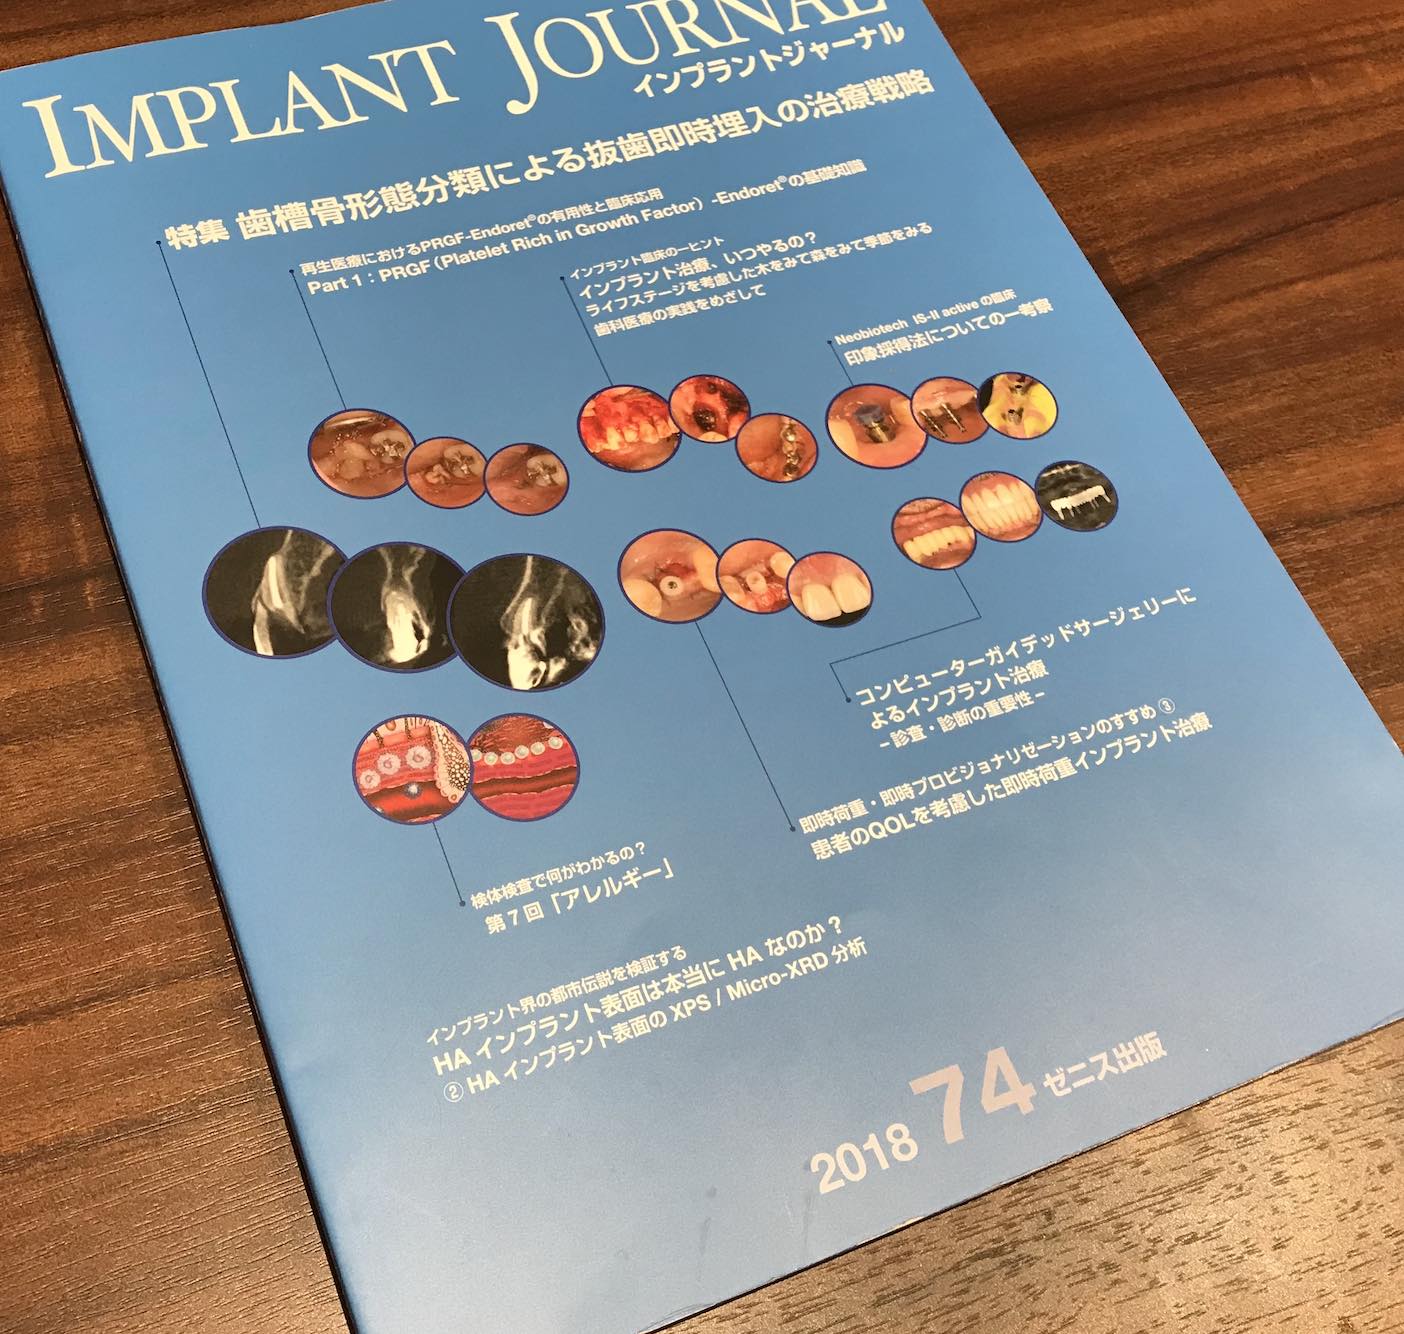 【歯科医師向け情報】【症例掲載】インプラントジャーナル 2018年74号にて症例を紹介しています